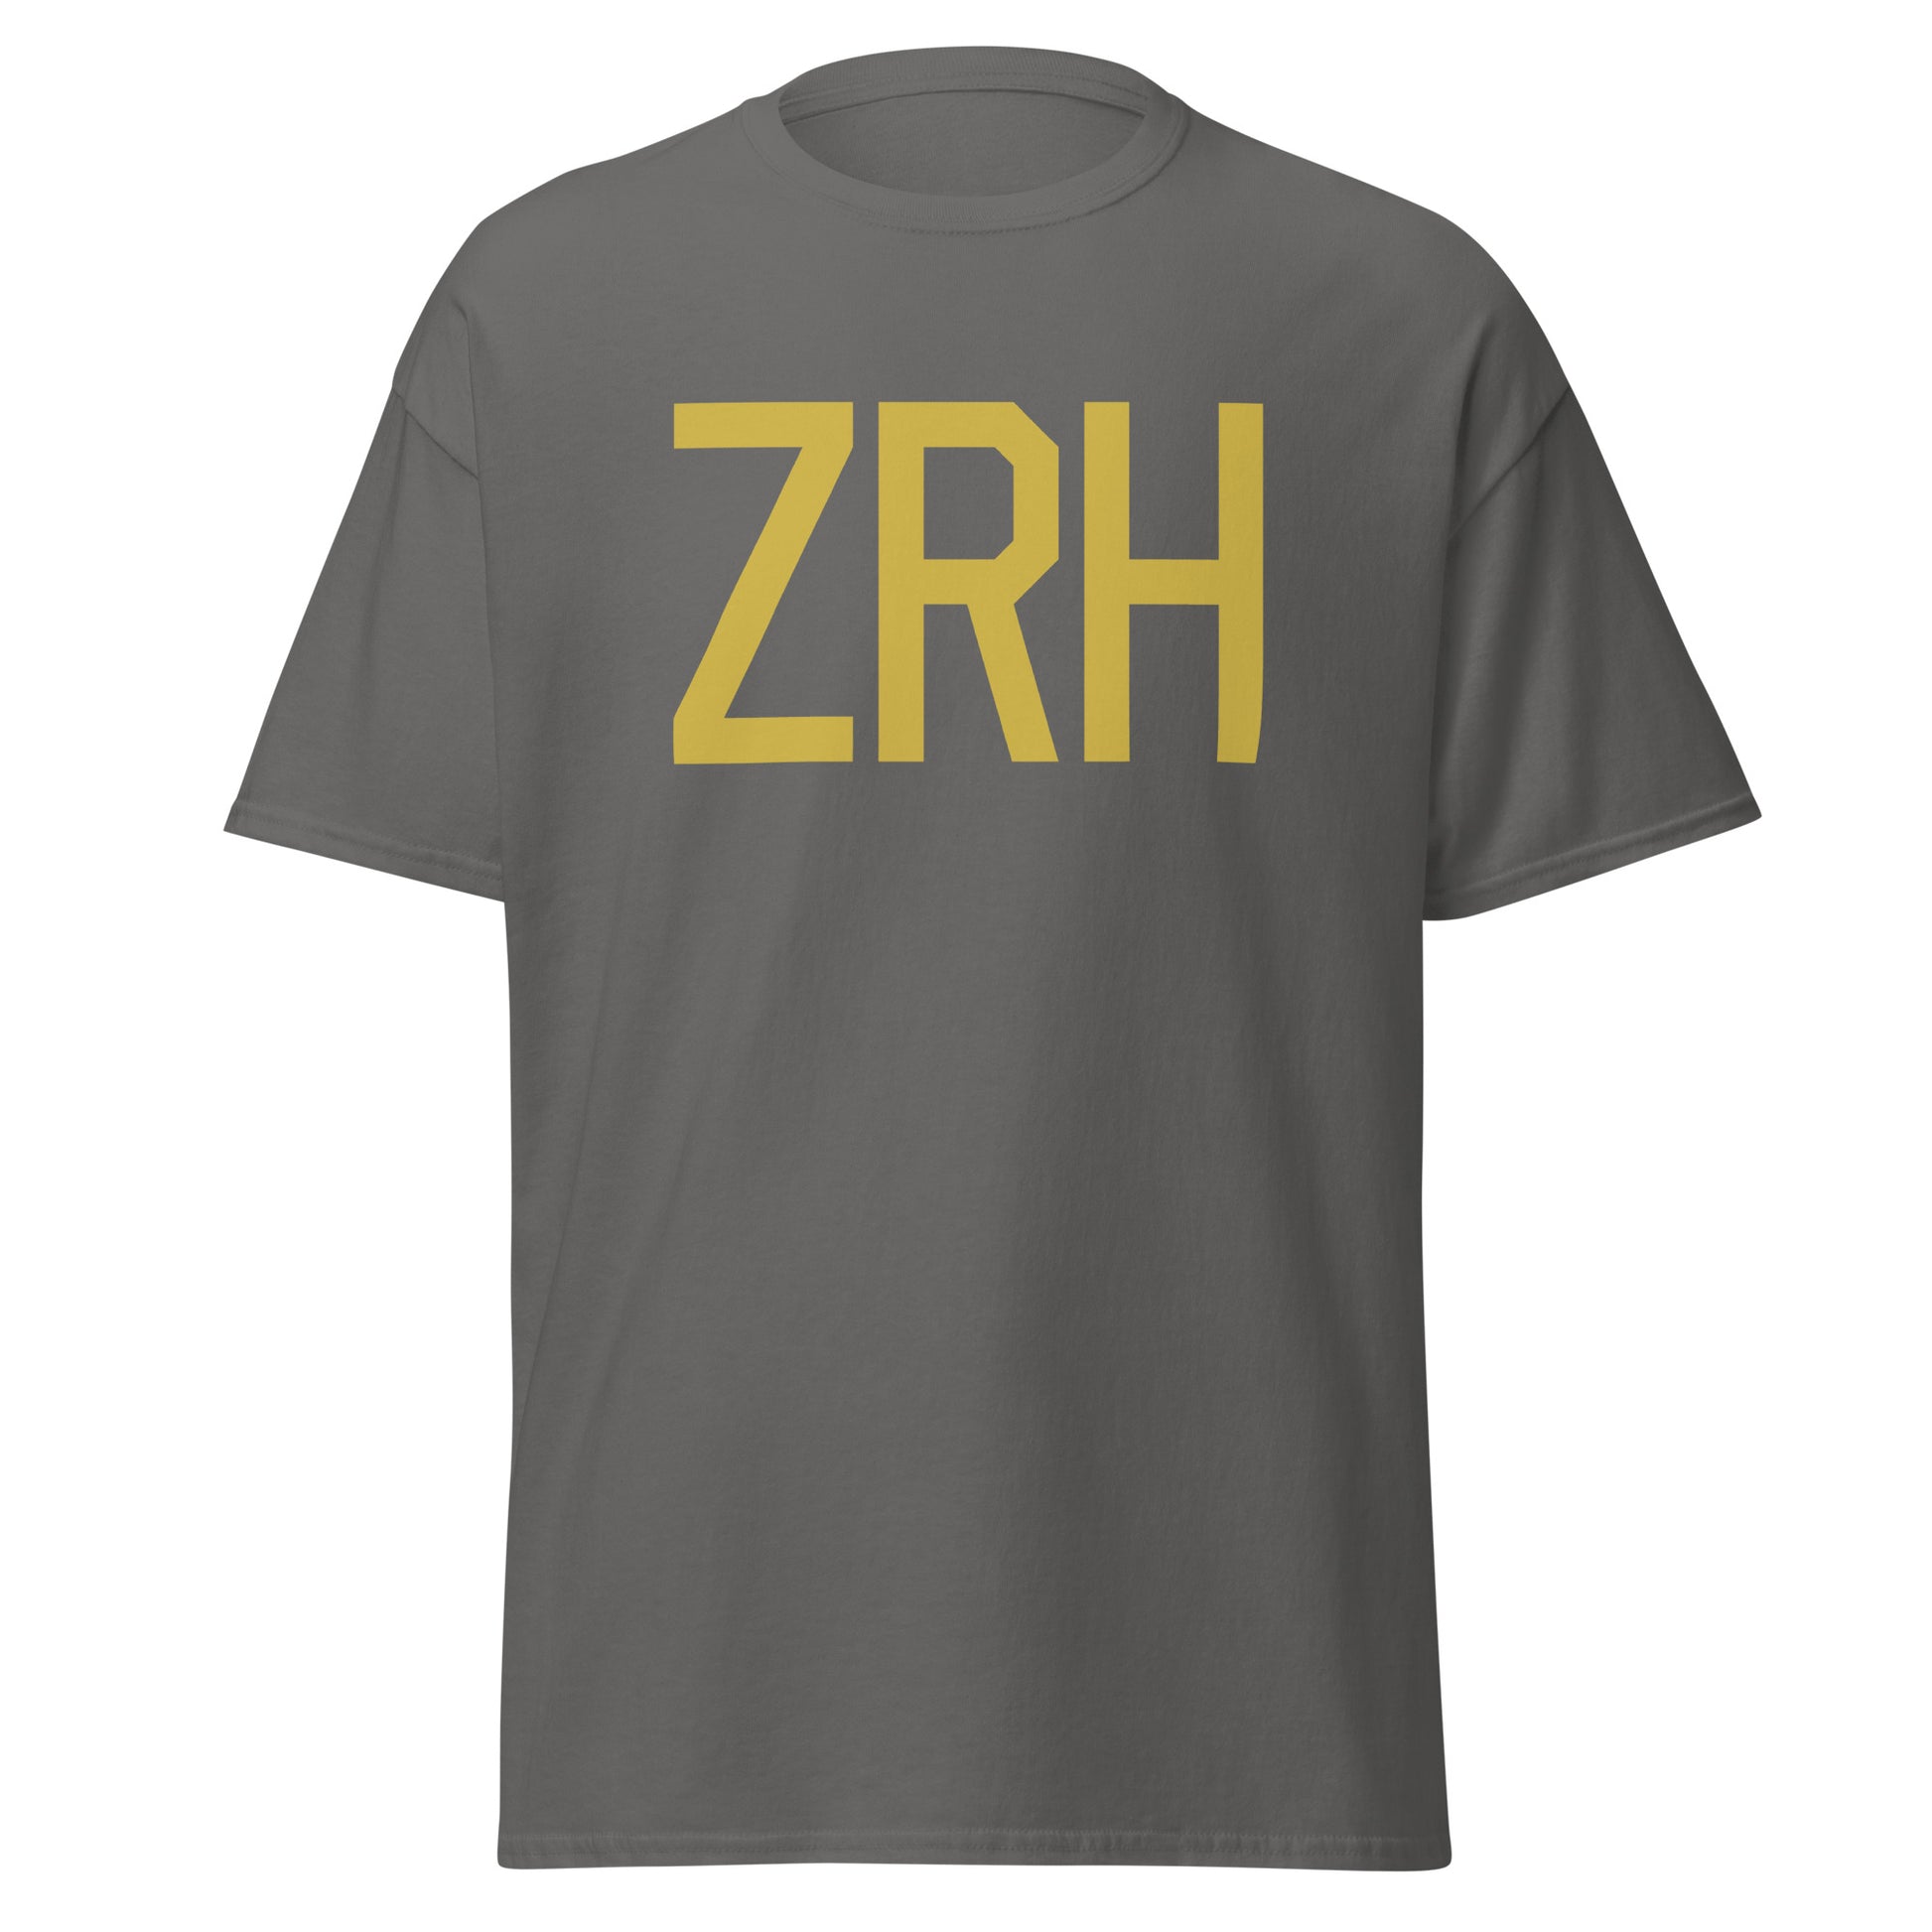 Aviation Enthusiast Men's Tee - Old Gold Graphic • ZRH Zurich • YHM Designs - Image 05